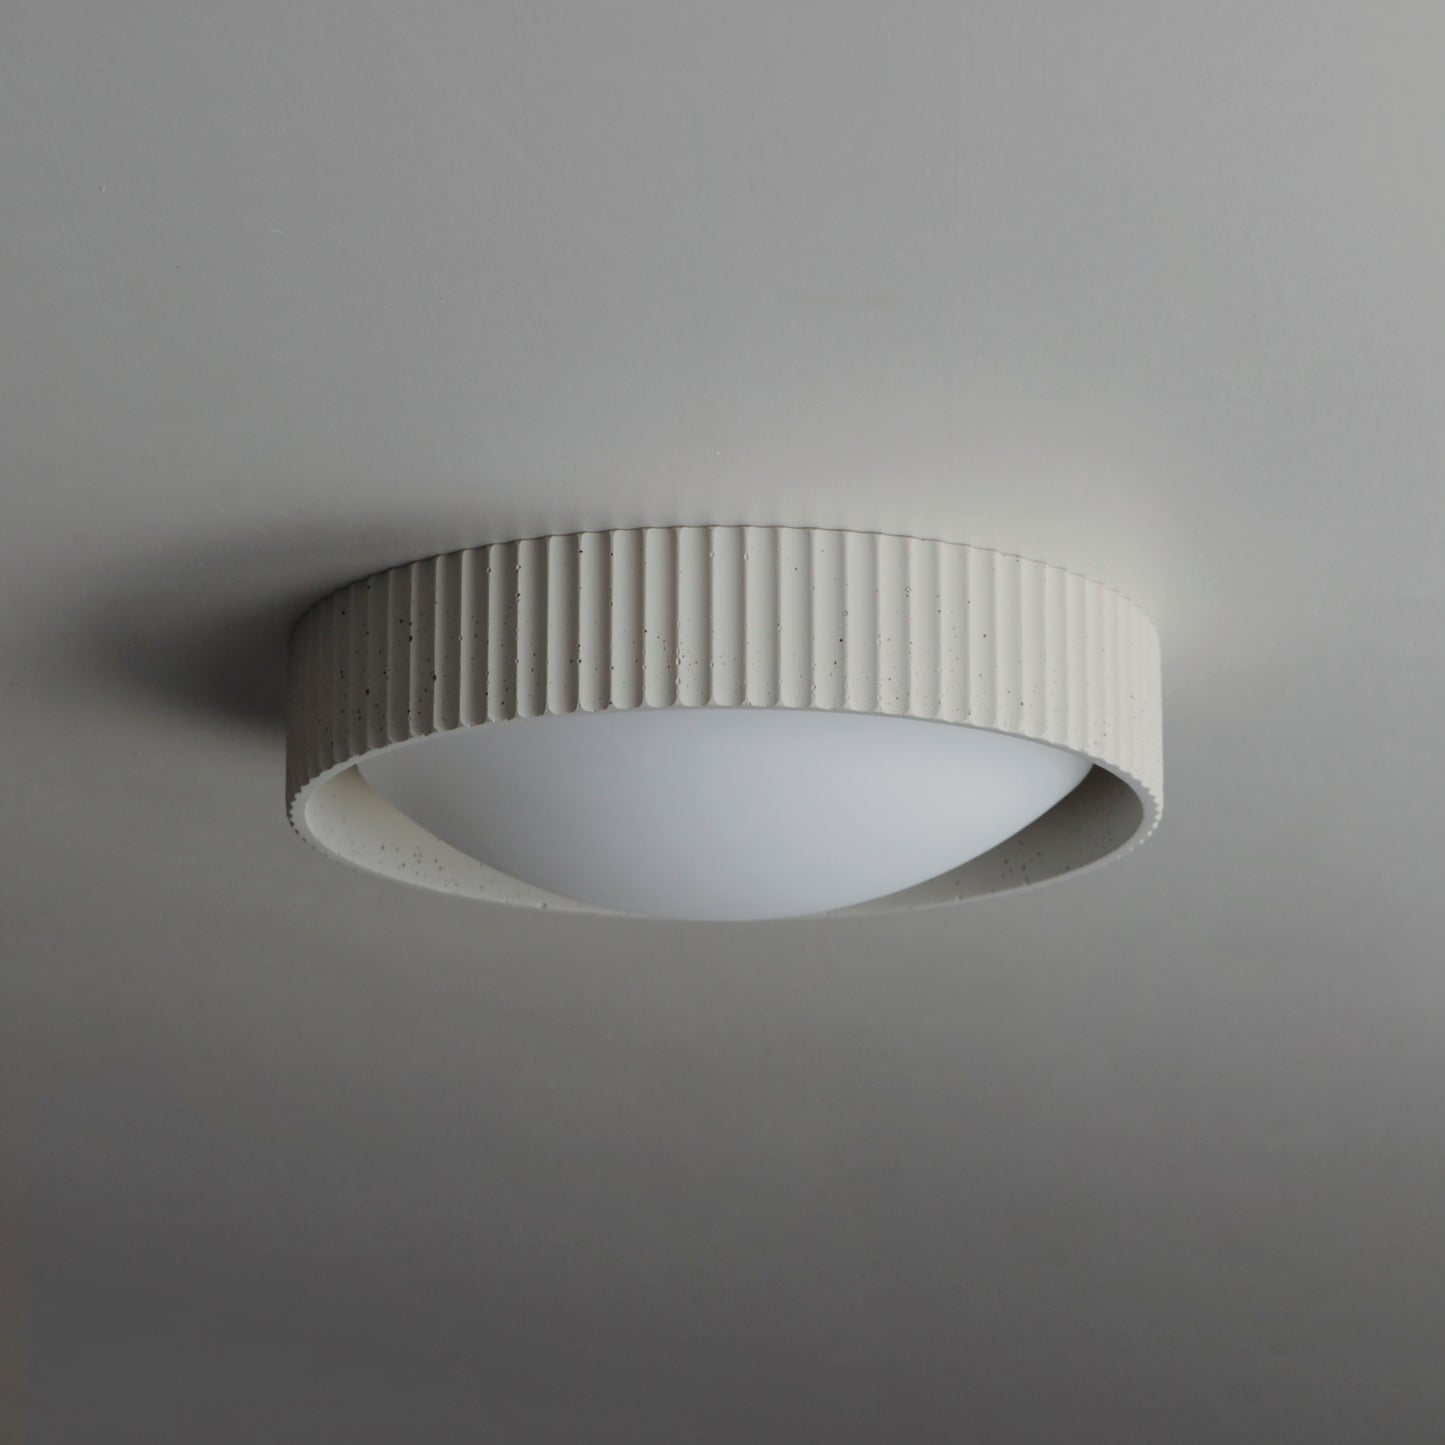 E25051-CHK - Souffle 14" Flush Mount Ceiling Light - Chaulk White